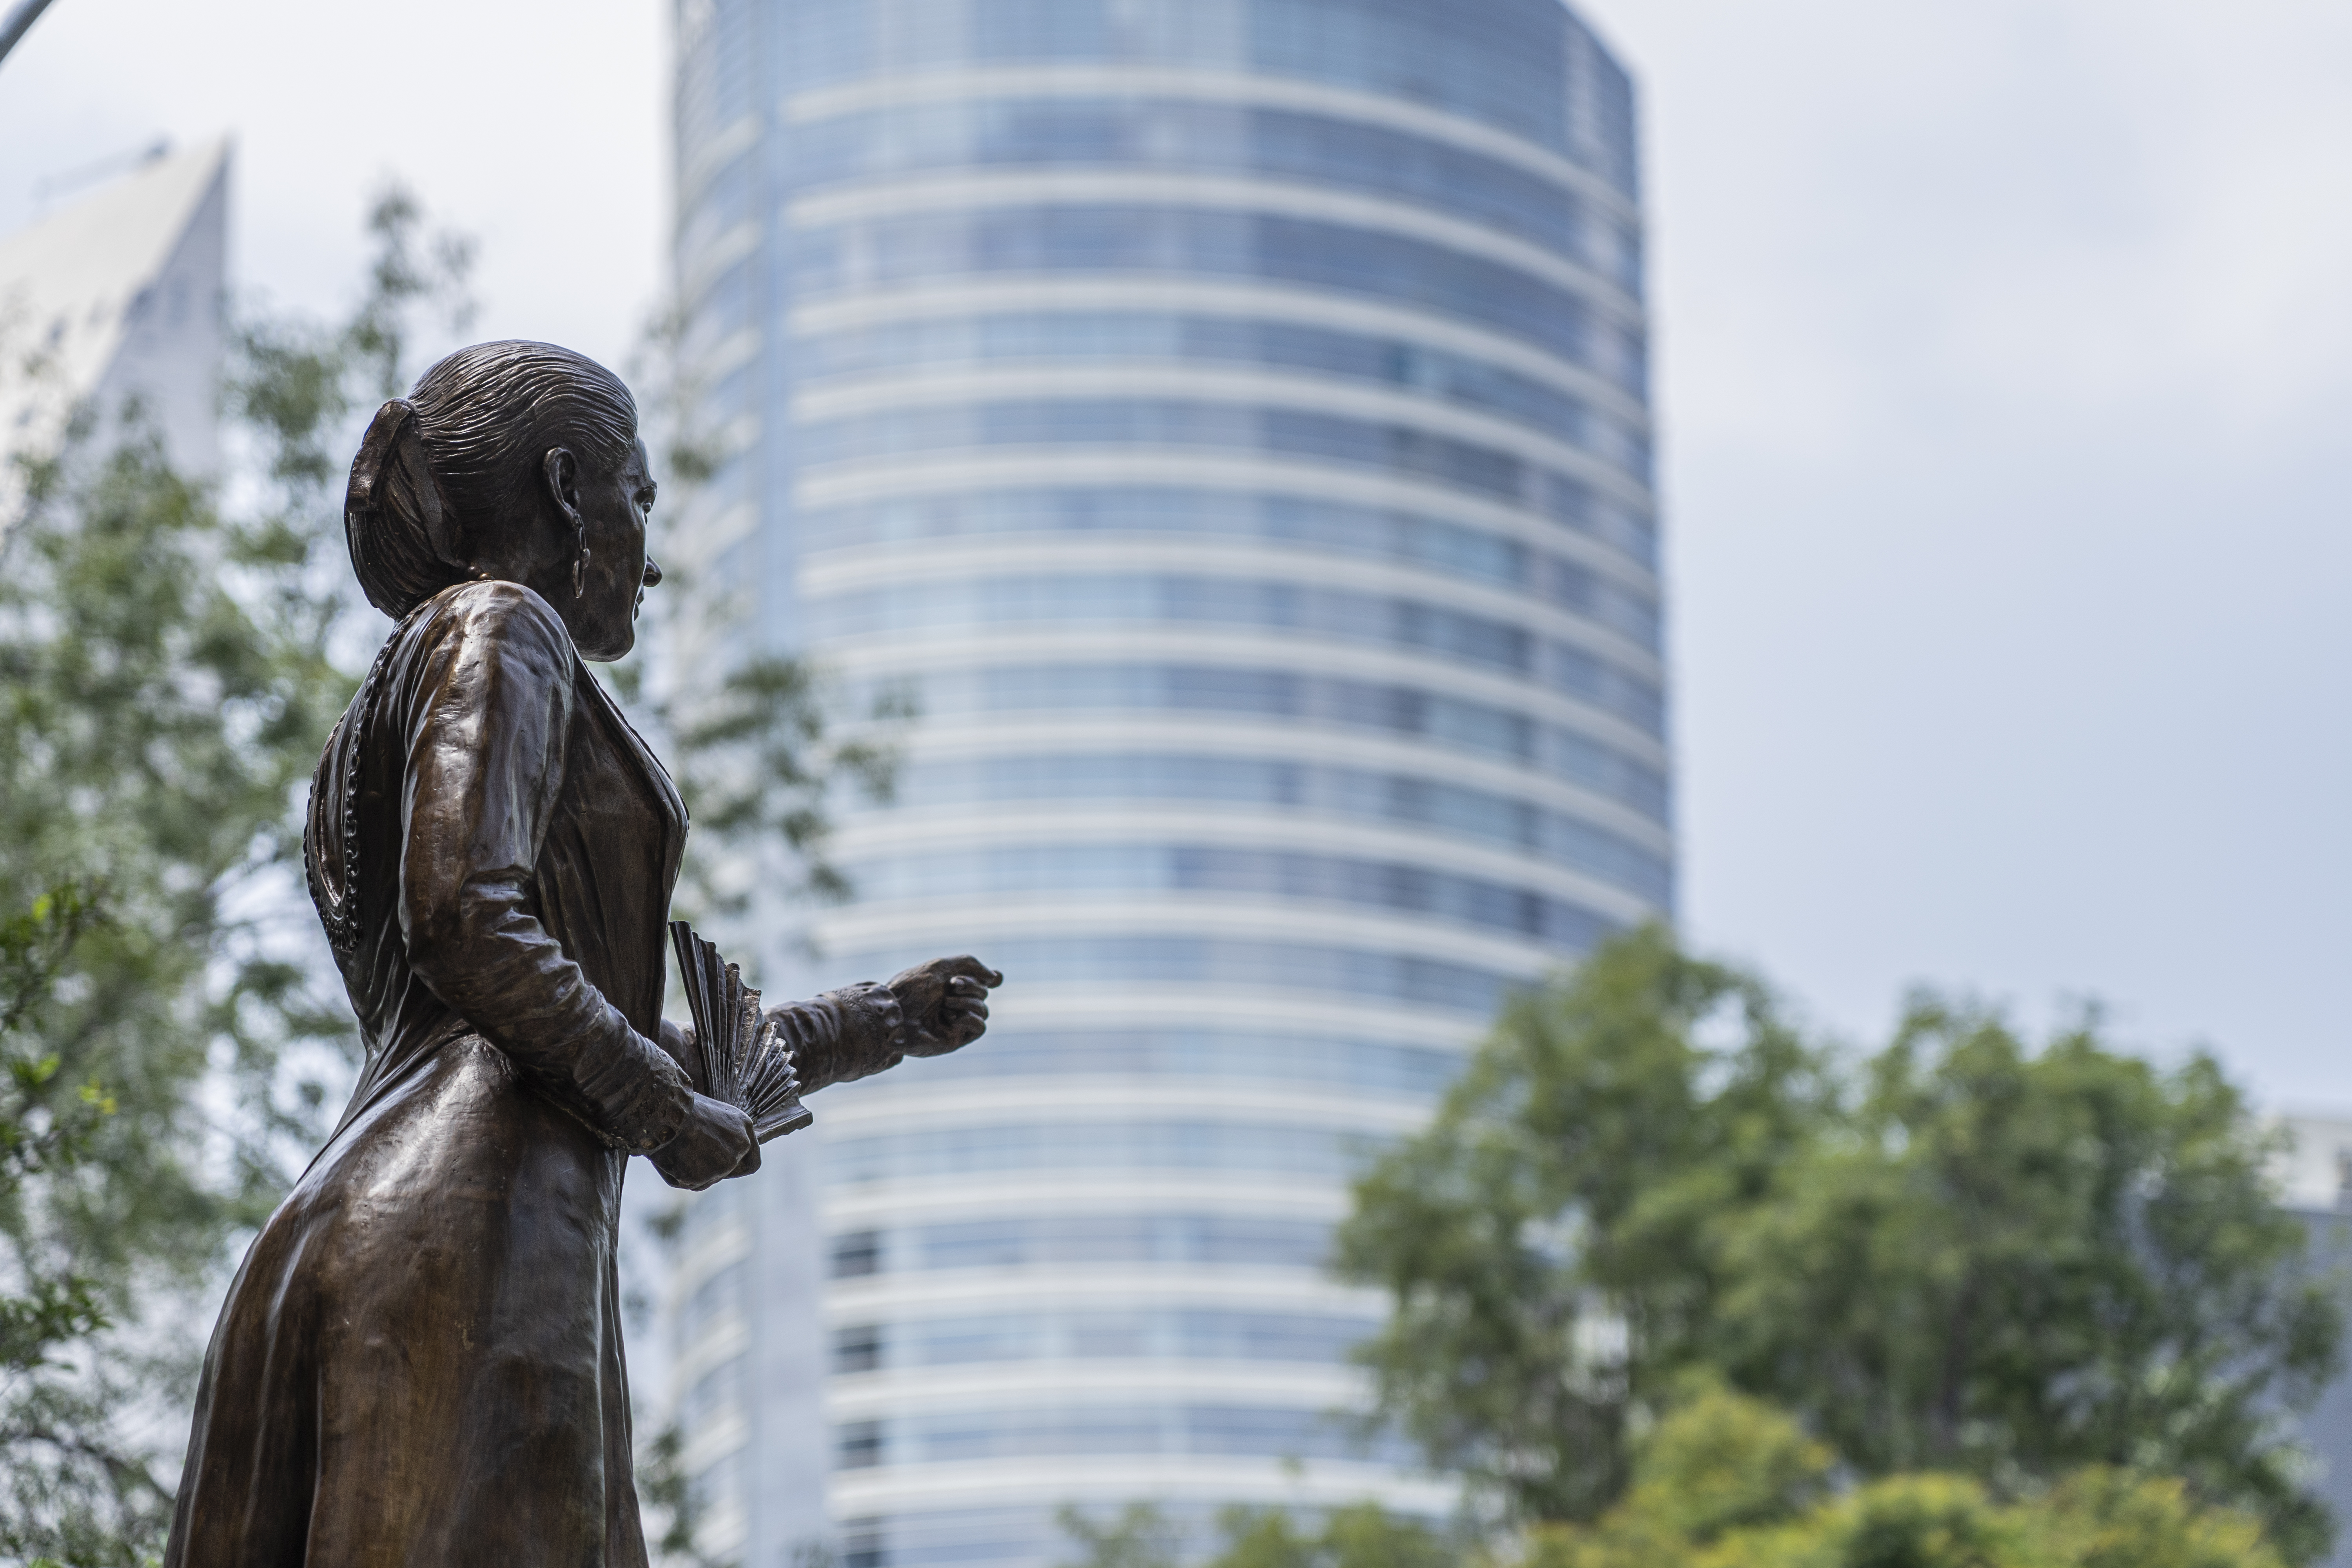 Cuatro nuevas estatuas de mujeres en el Paseo de la Reforma para relatar “una historia más justa”